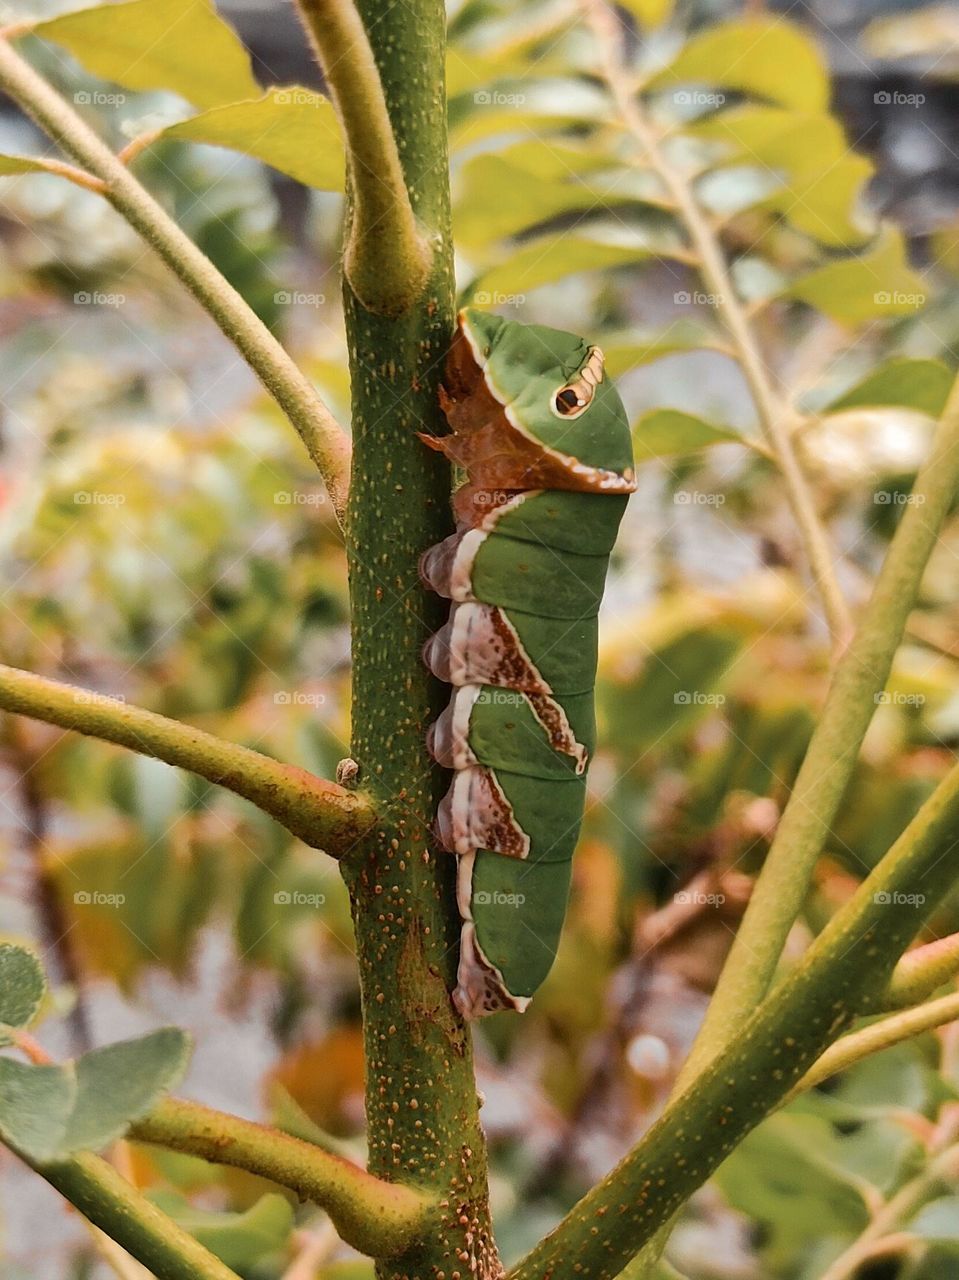 A caterpillar climbing for food